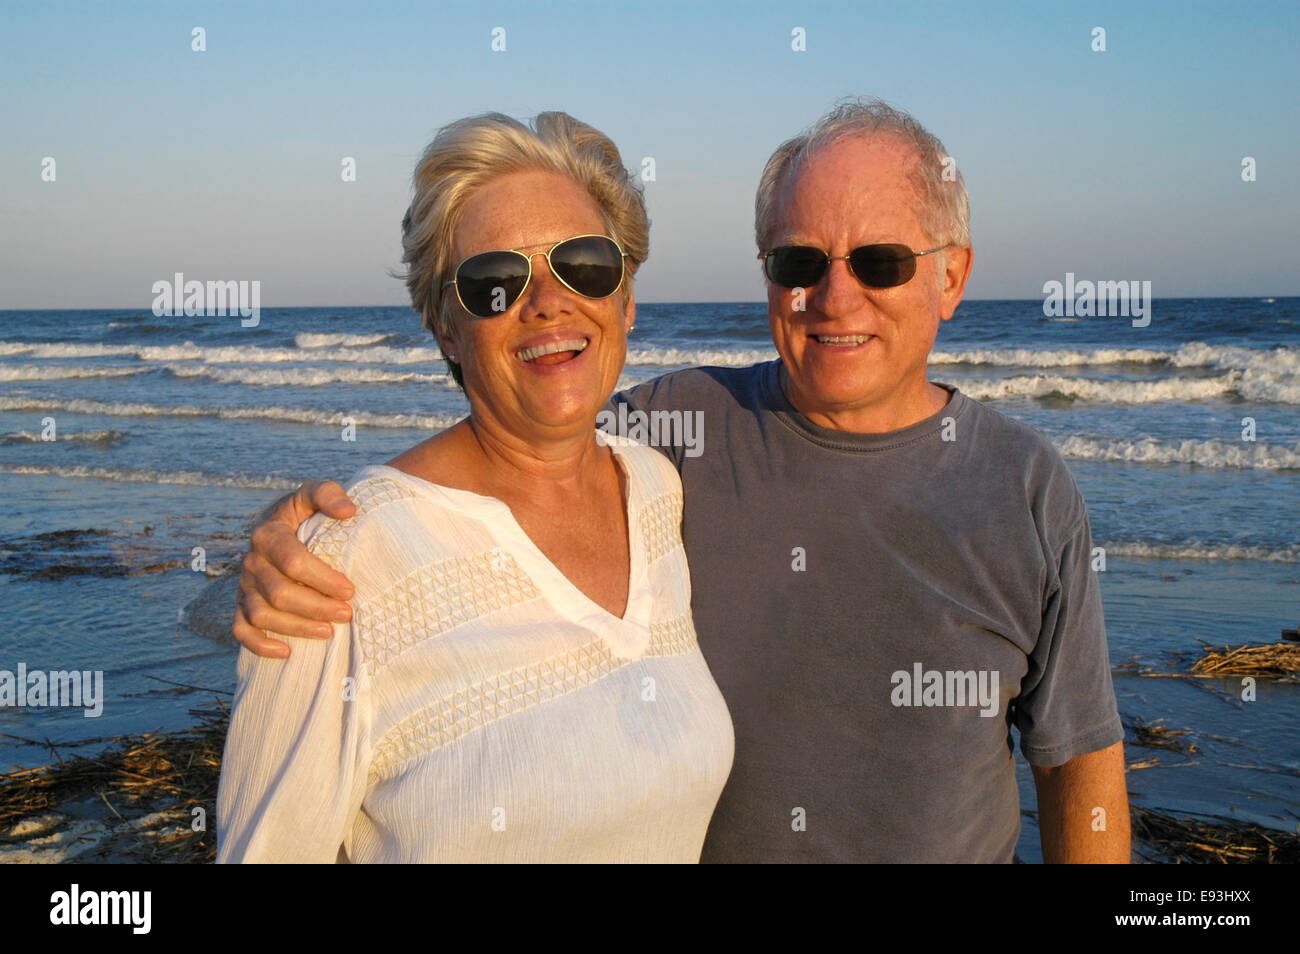 Senior paar am Strand: Porträt eines älteren Mann und Frau Paares am Strand direkt am Meer bei Sonnenuntergang. Stockfoto